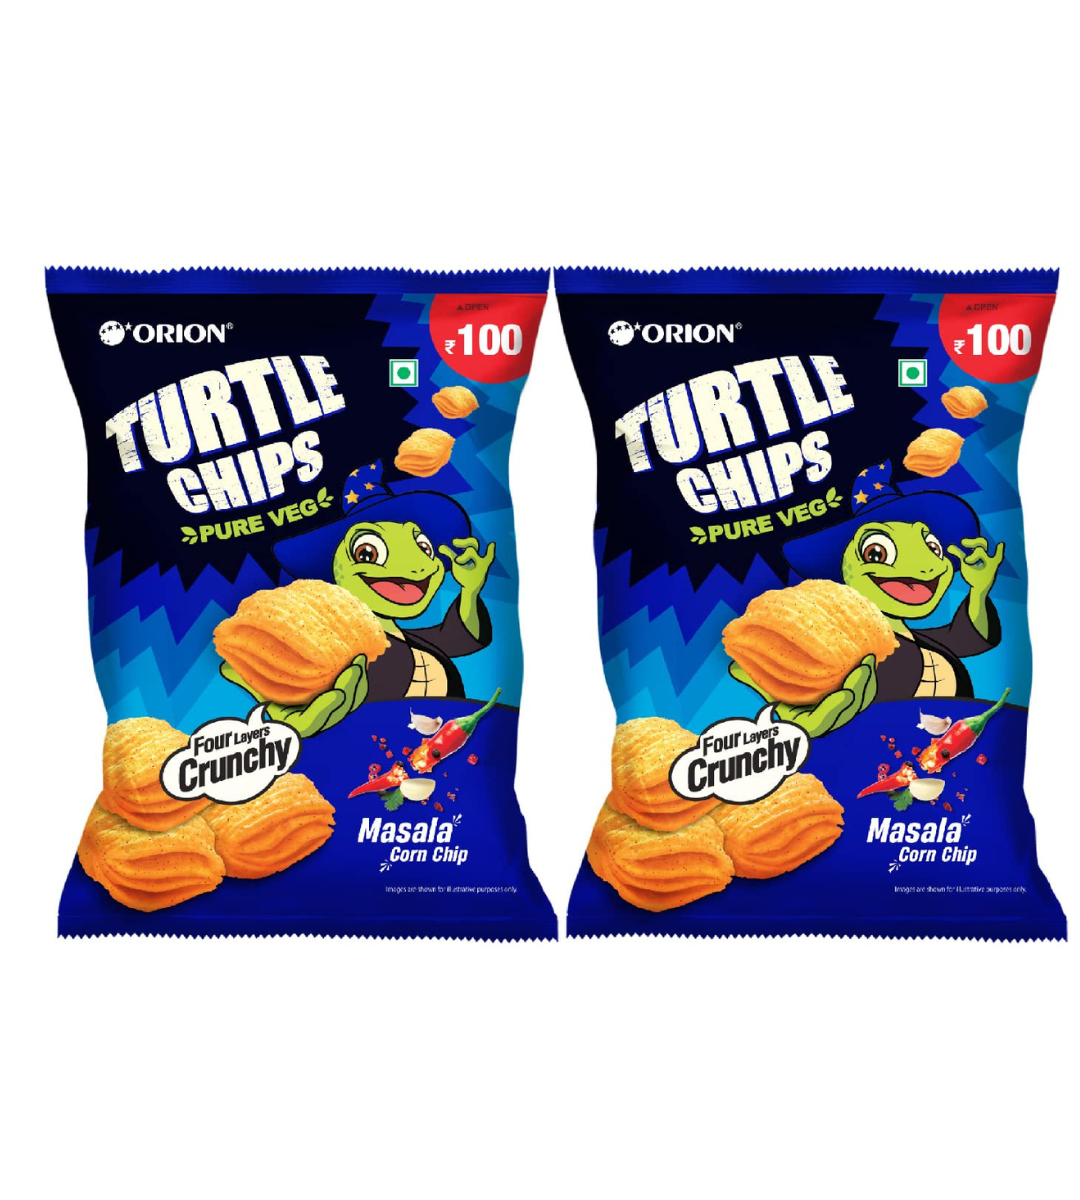 Orion Turtle Chips Party Pack (Pack of 2) - Masala Korean Corn Chips|100% Veg|Korean Snacks - 115 gm (Pack of 2)